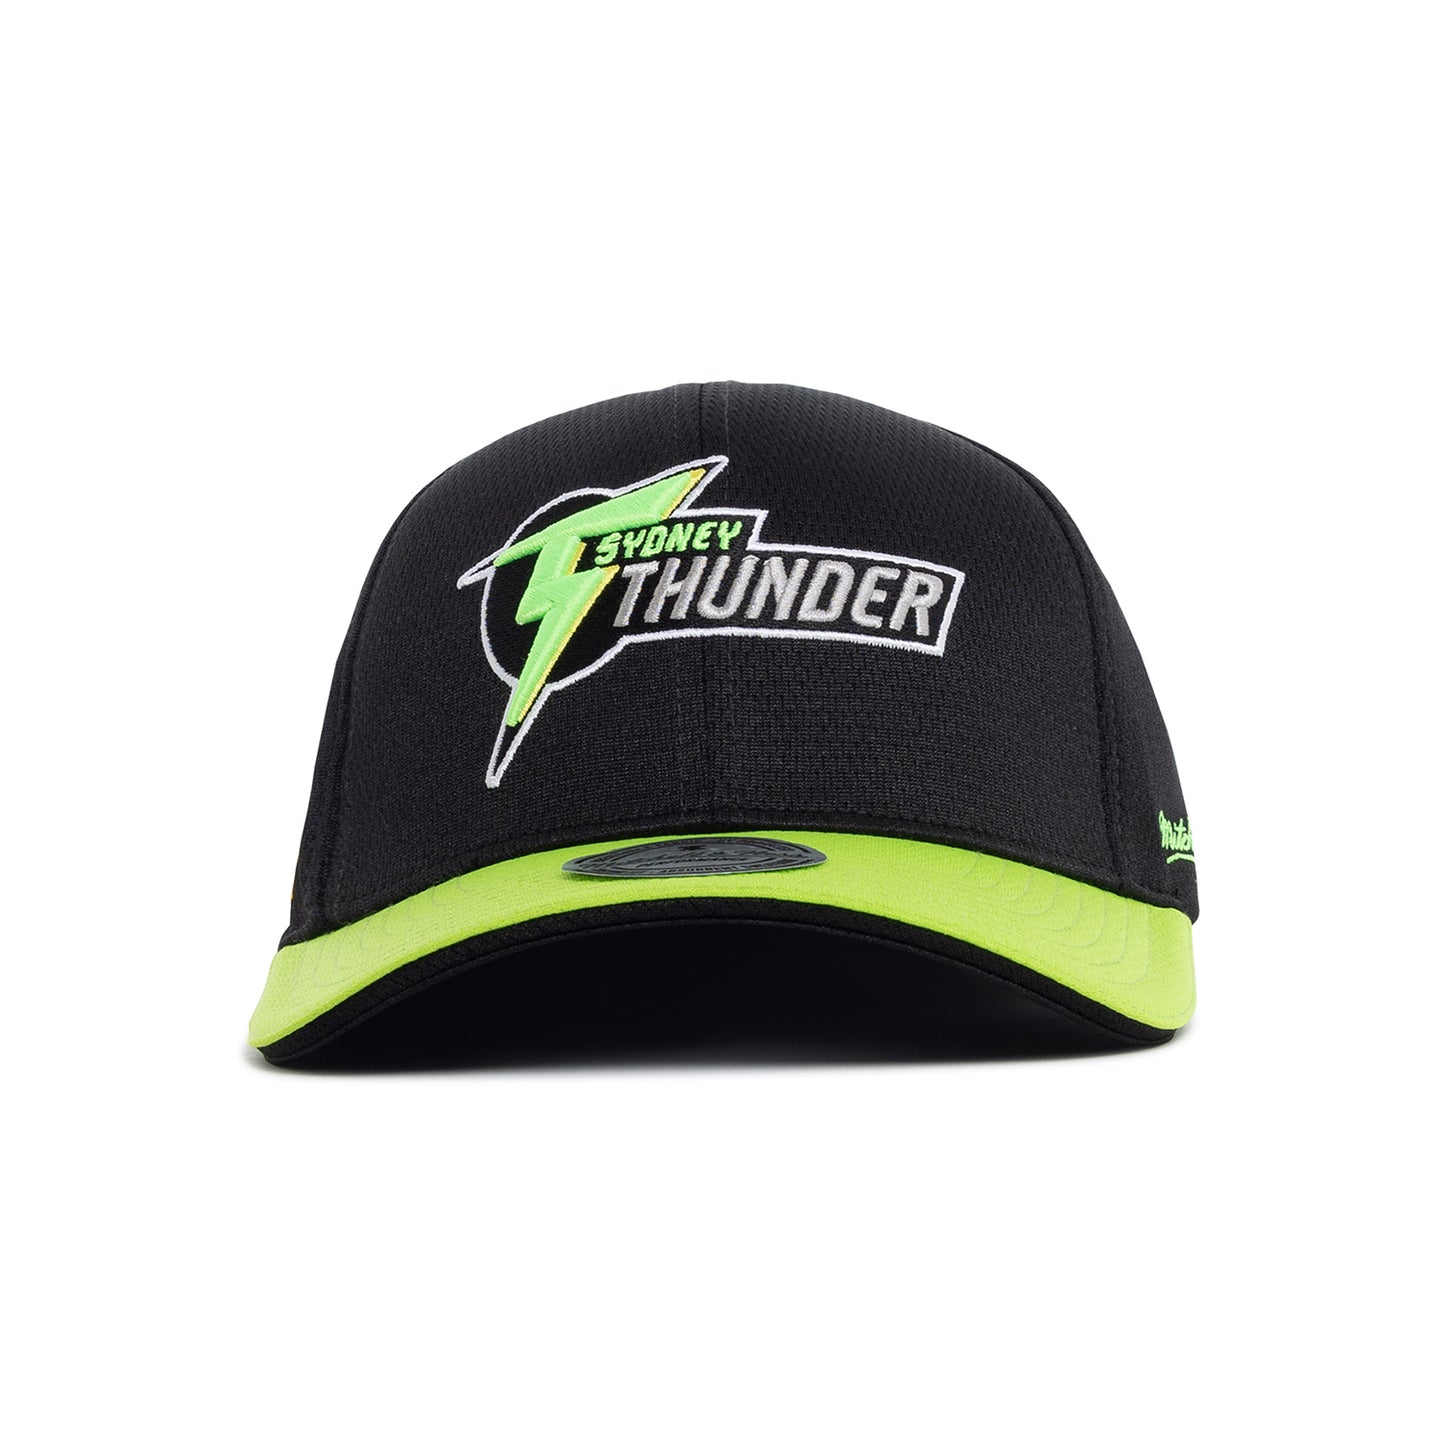 Sydney Thunder BBL On-Field Cap